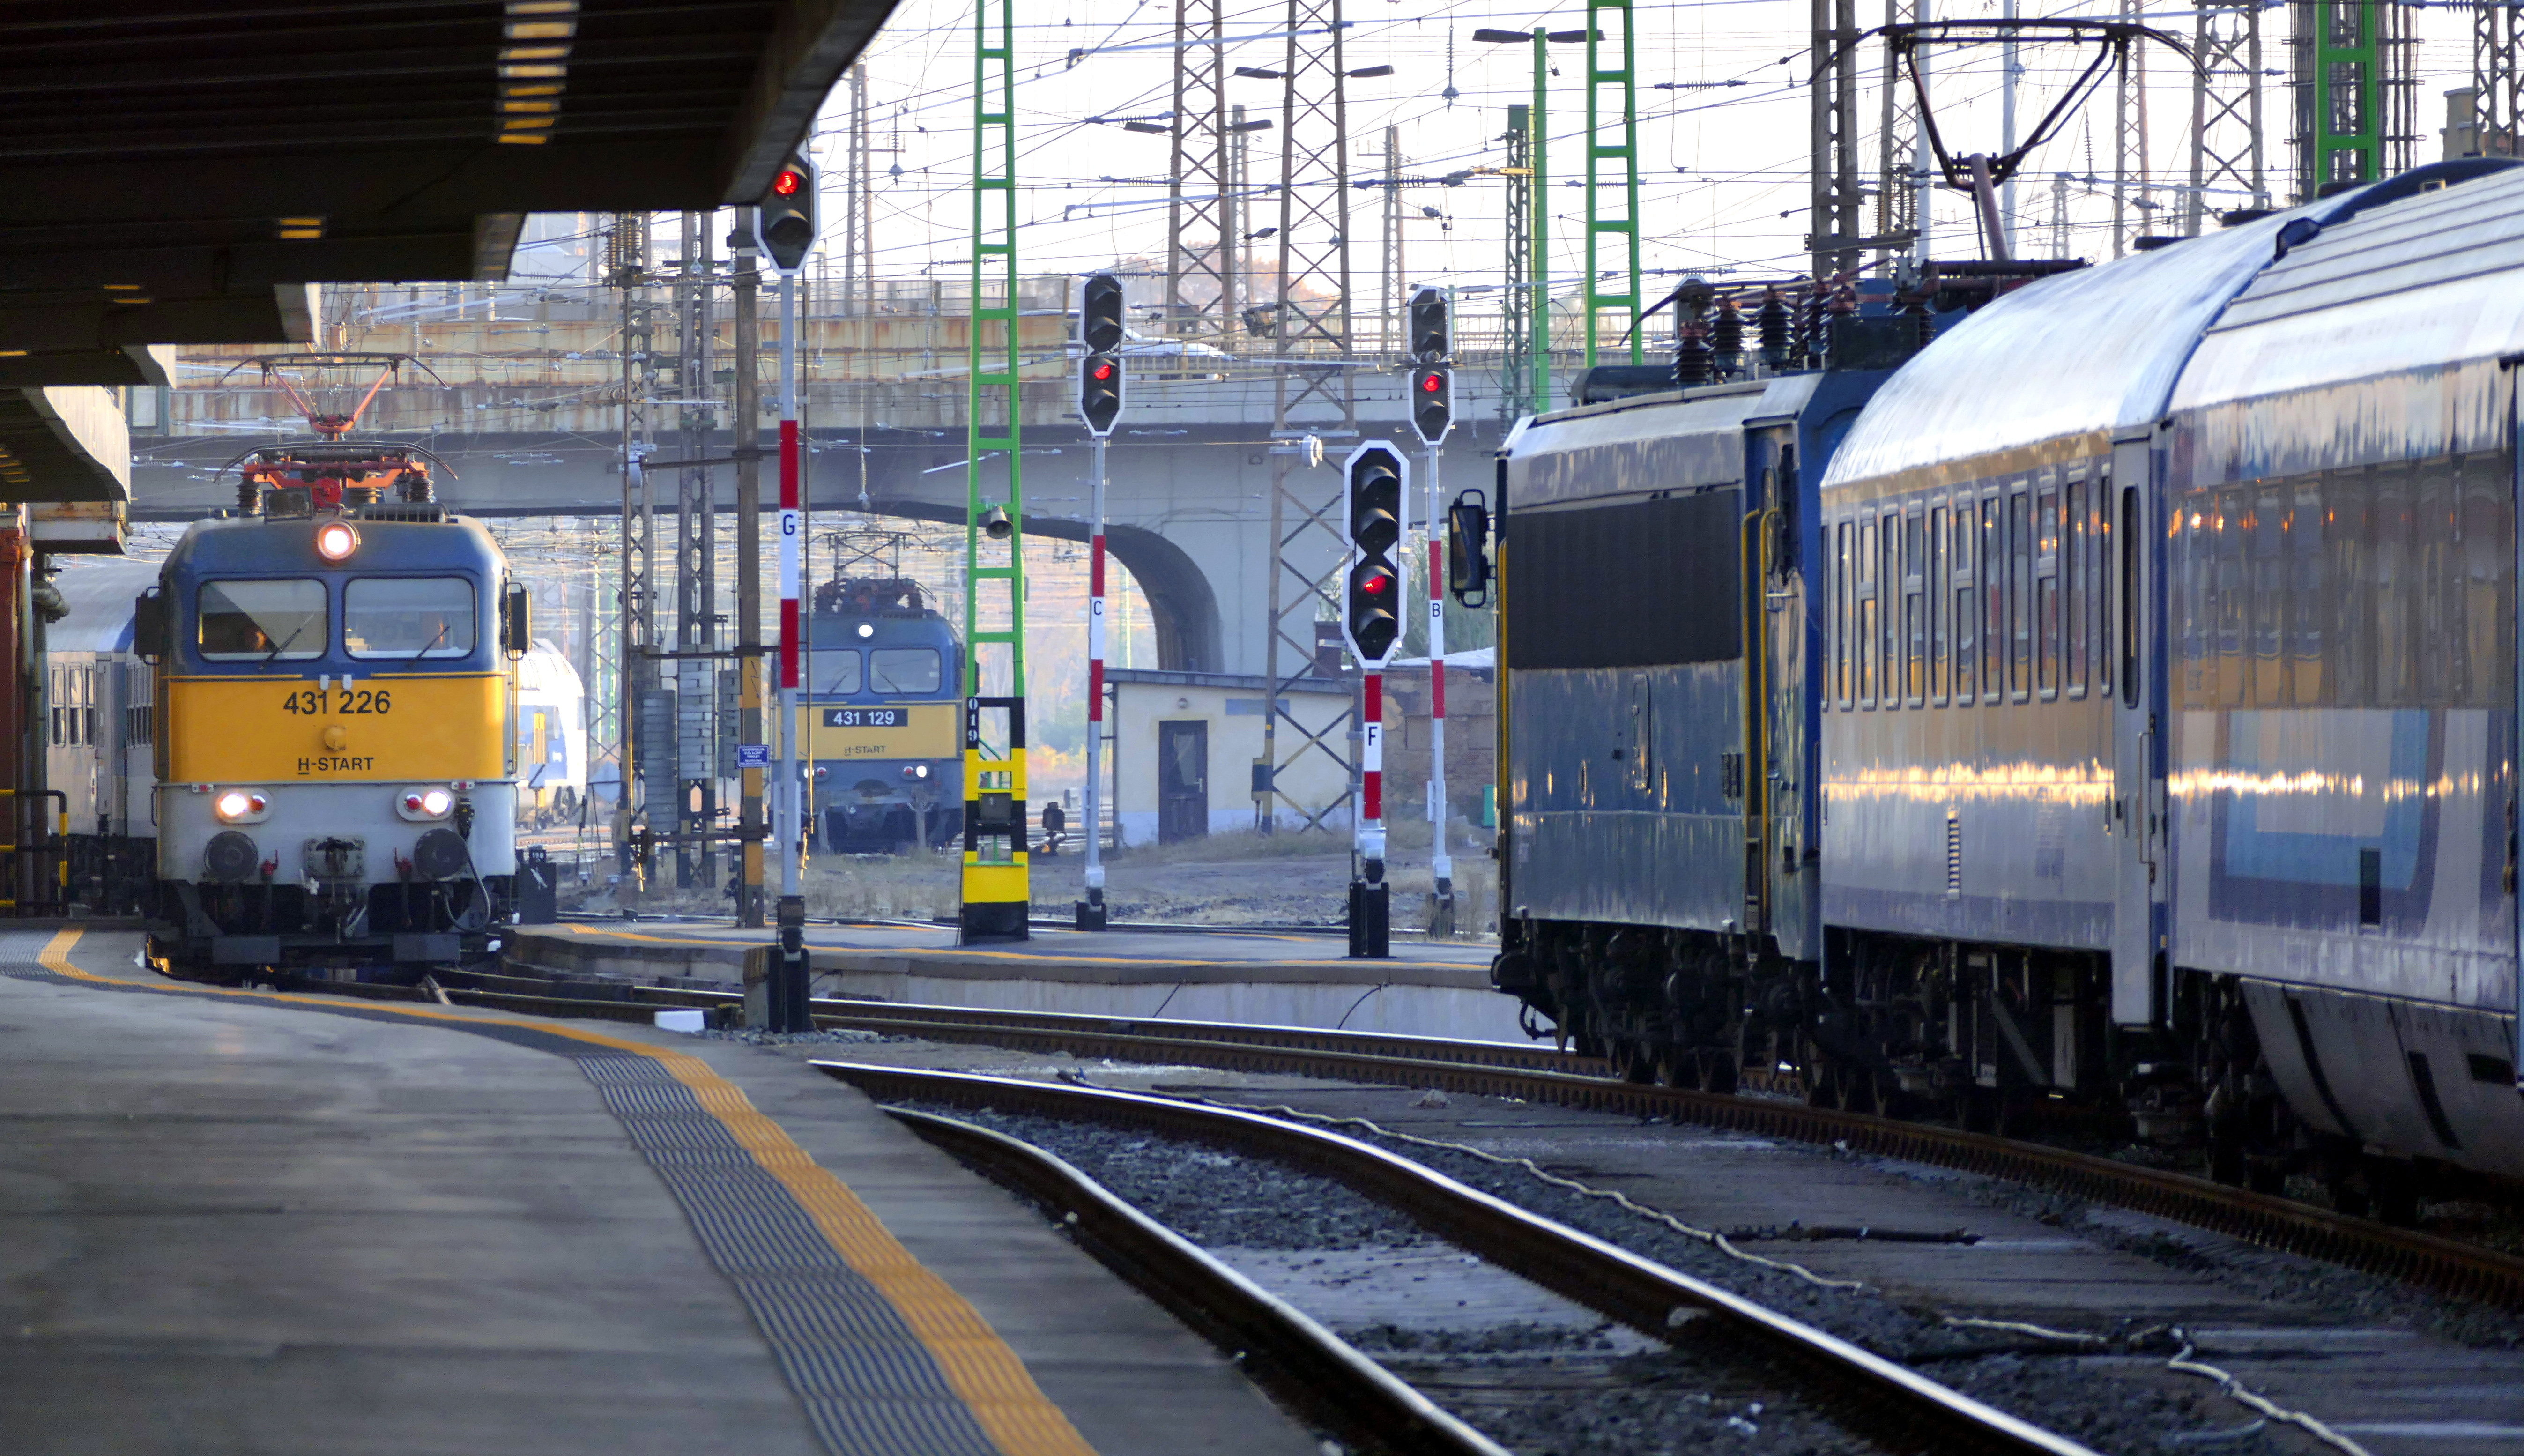 A legproblémásabb vasútvonalak versenyében legyőzhetetlen a Nyugati-Záhony, a miskolci és békéscsabai vonalakat előzte